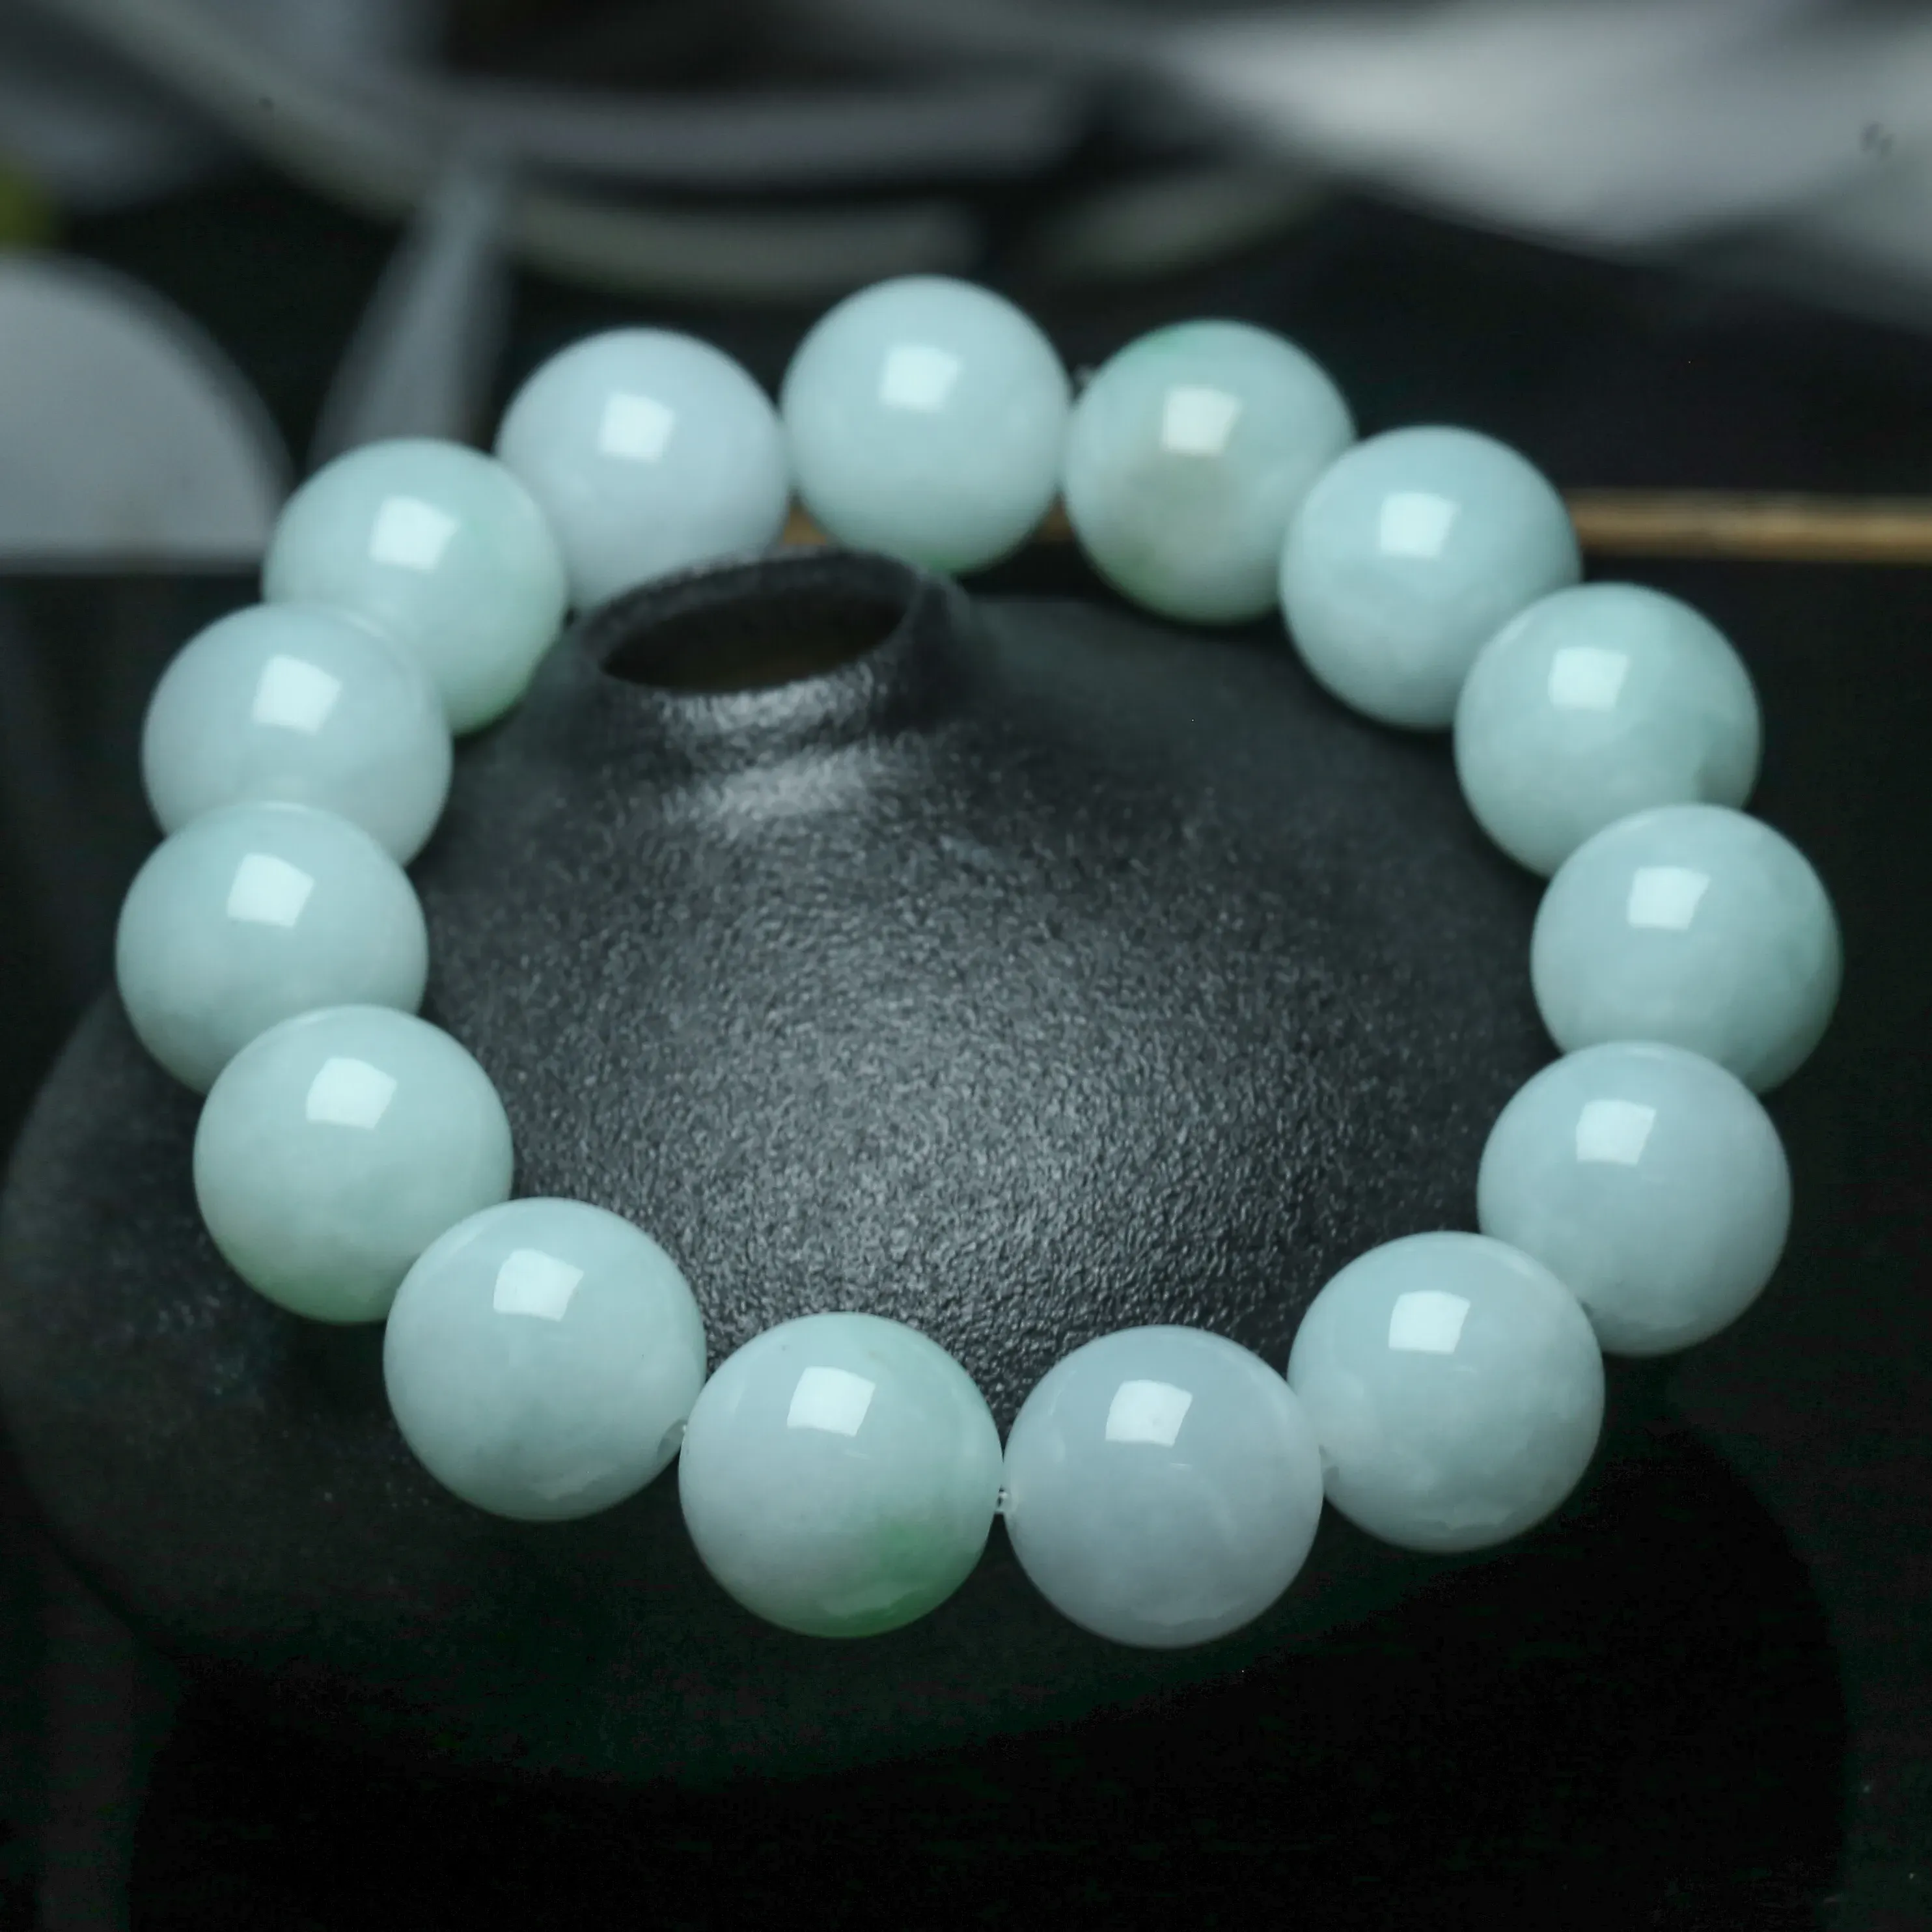 翡翠圆珠手串，共15颗珠子，取其中一颗珠尺寸大约13.86mm，亮丽秀气，圆润饱满，上手佩戴效果漂亮。